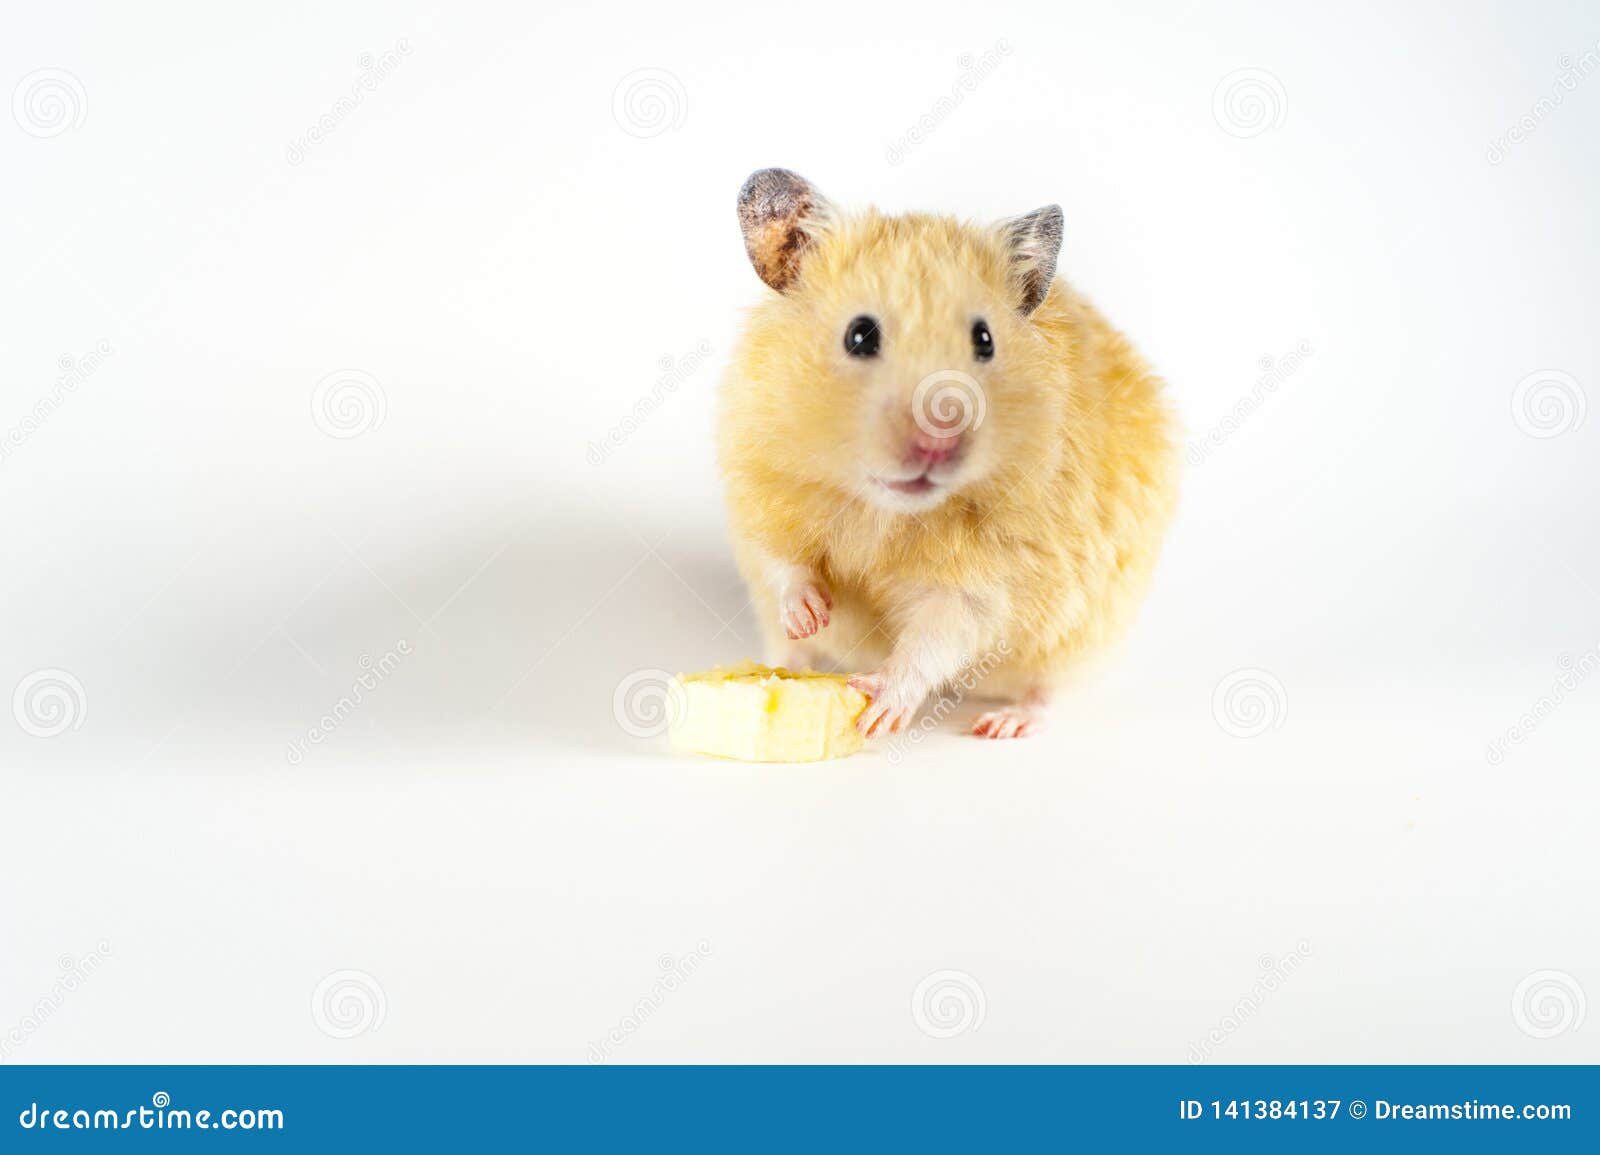 hamster eating banana